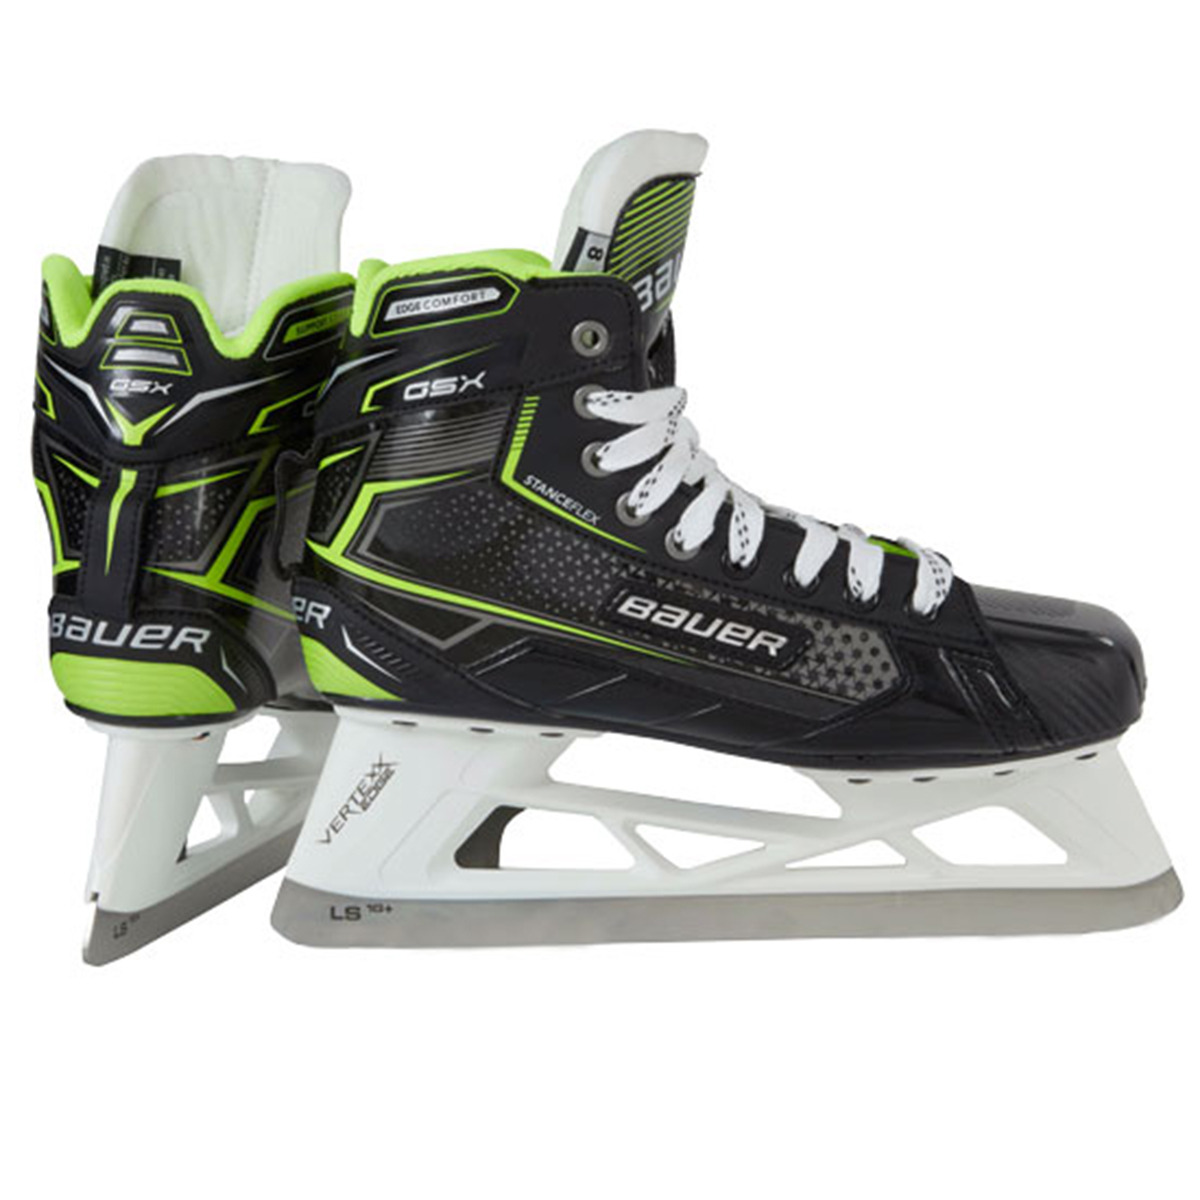 Goalies Plus - (Best Price) Bauer GSX Junior Ice Hockey Goalie Skates